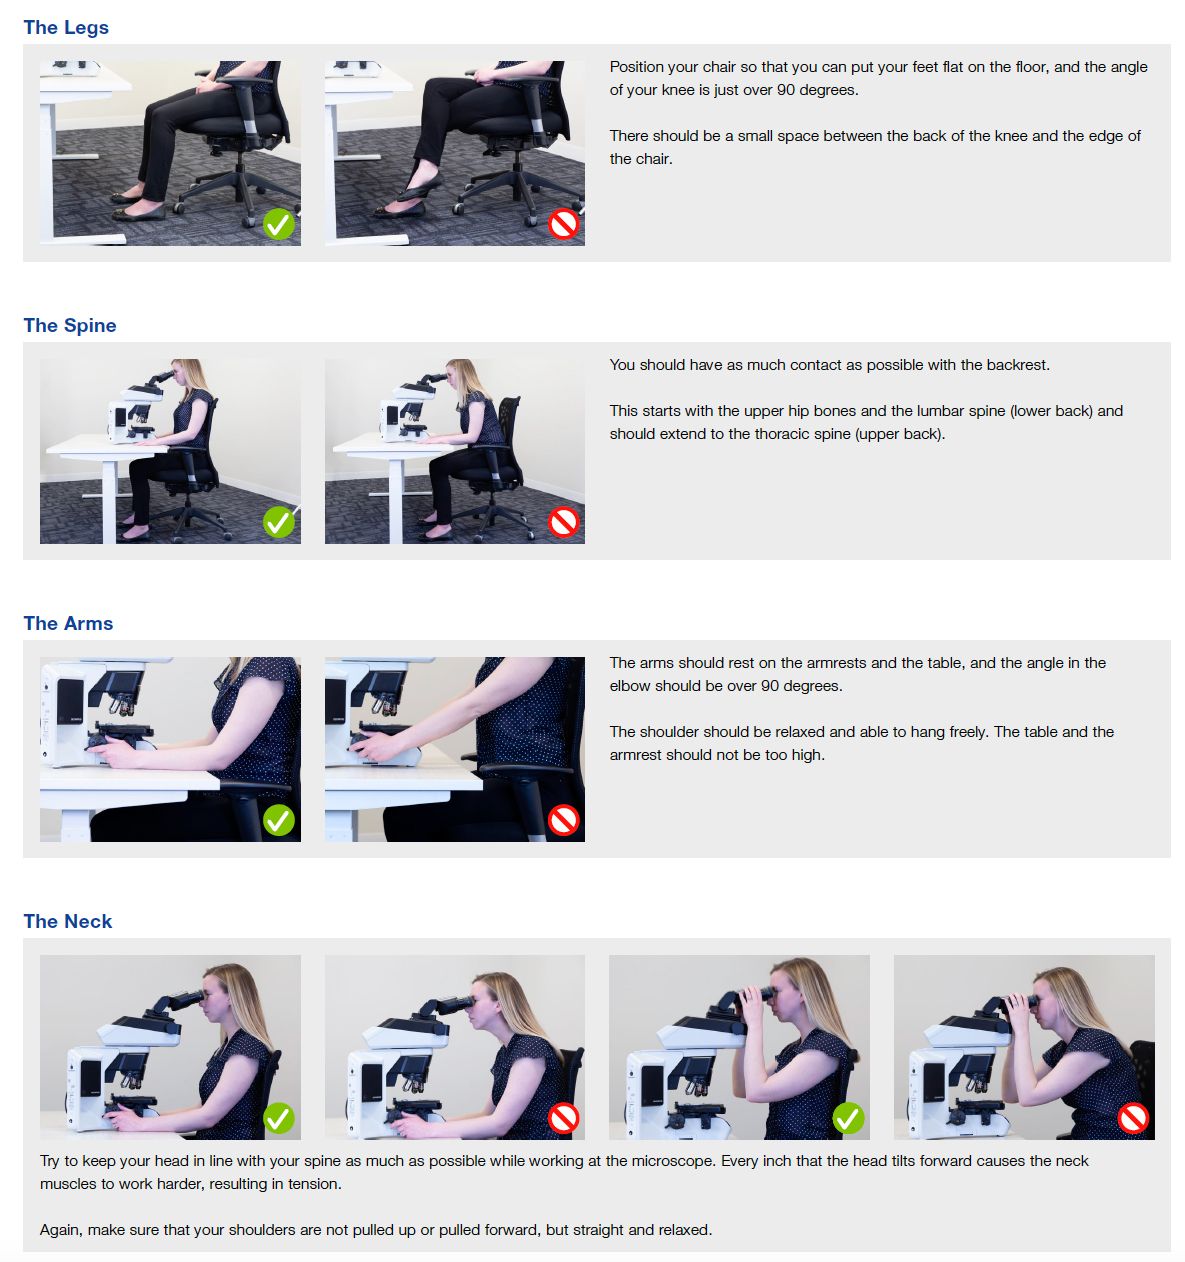 Affiche éducative définissant les postures ergonomiques idéales à adopter en microscopie de routine afin de prévenir les tensions et les blessures